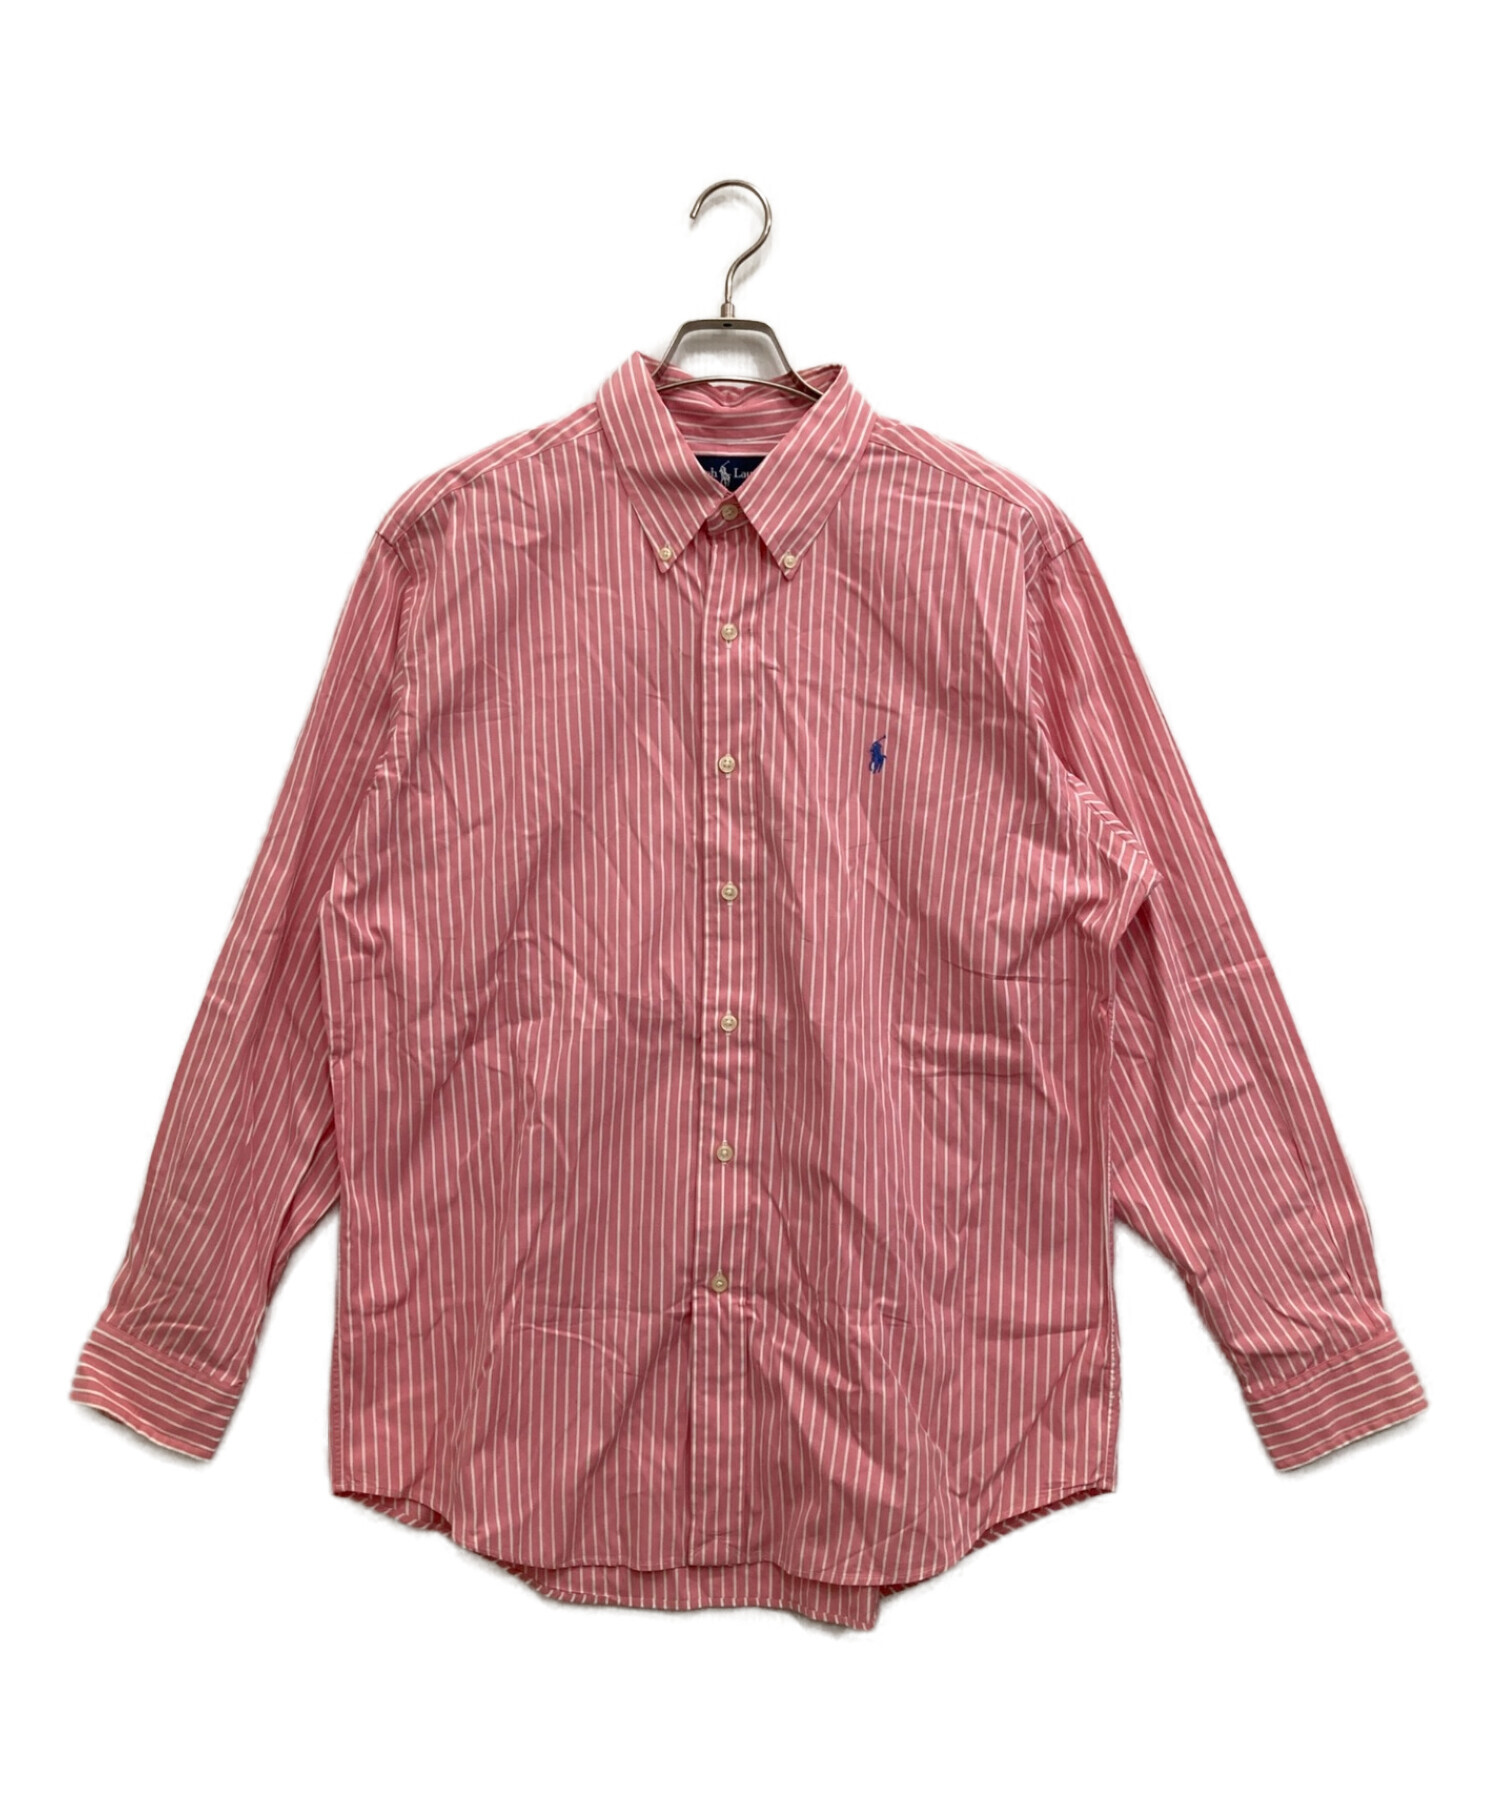 POLO RALPH LAUREN (ポロ・ラルフローレン) ストライプシャツ ピンク サイズ:XL